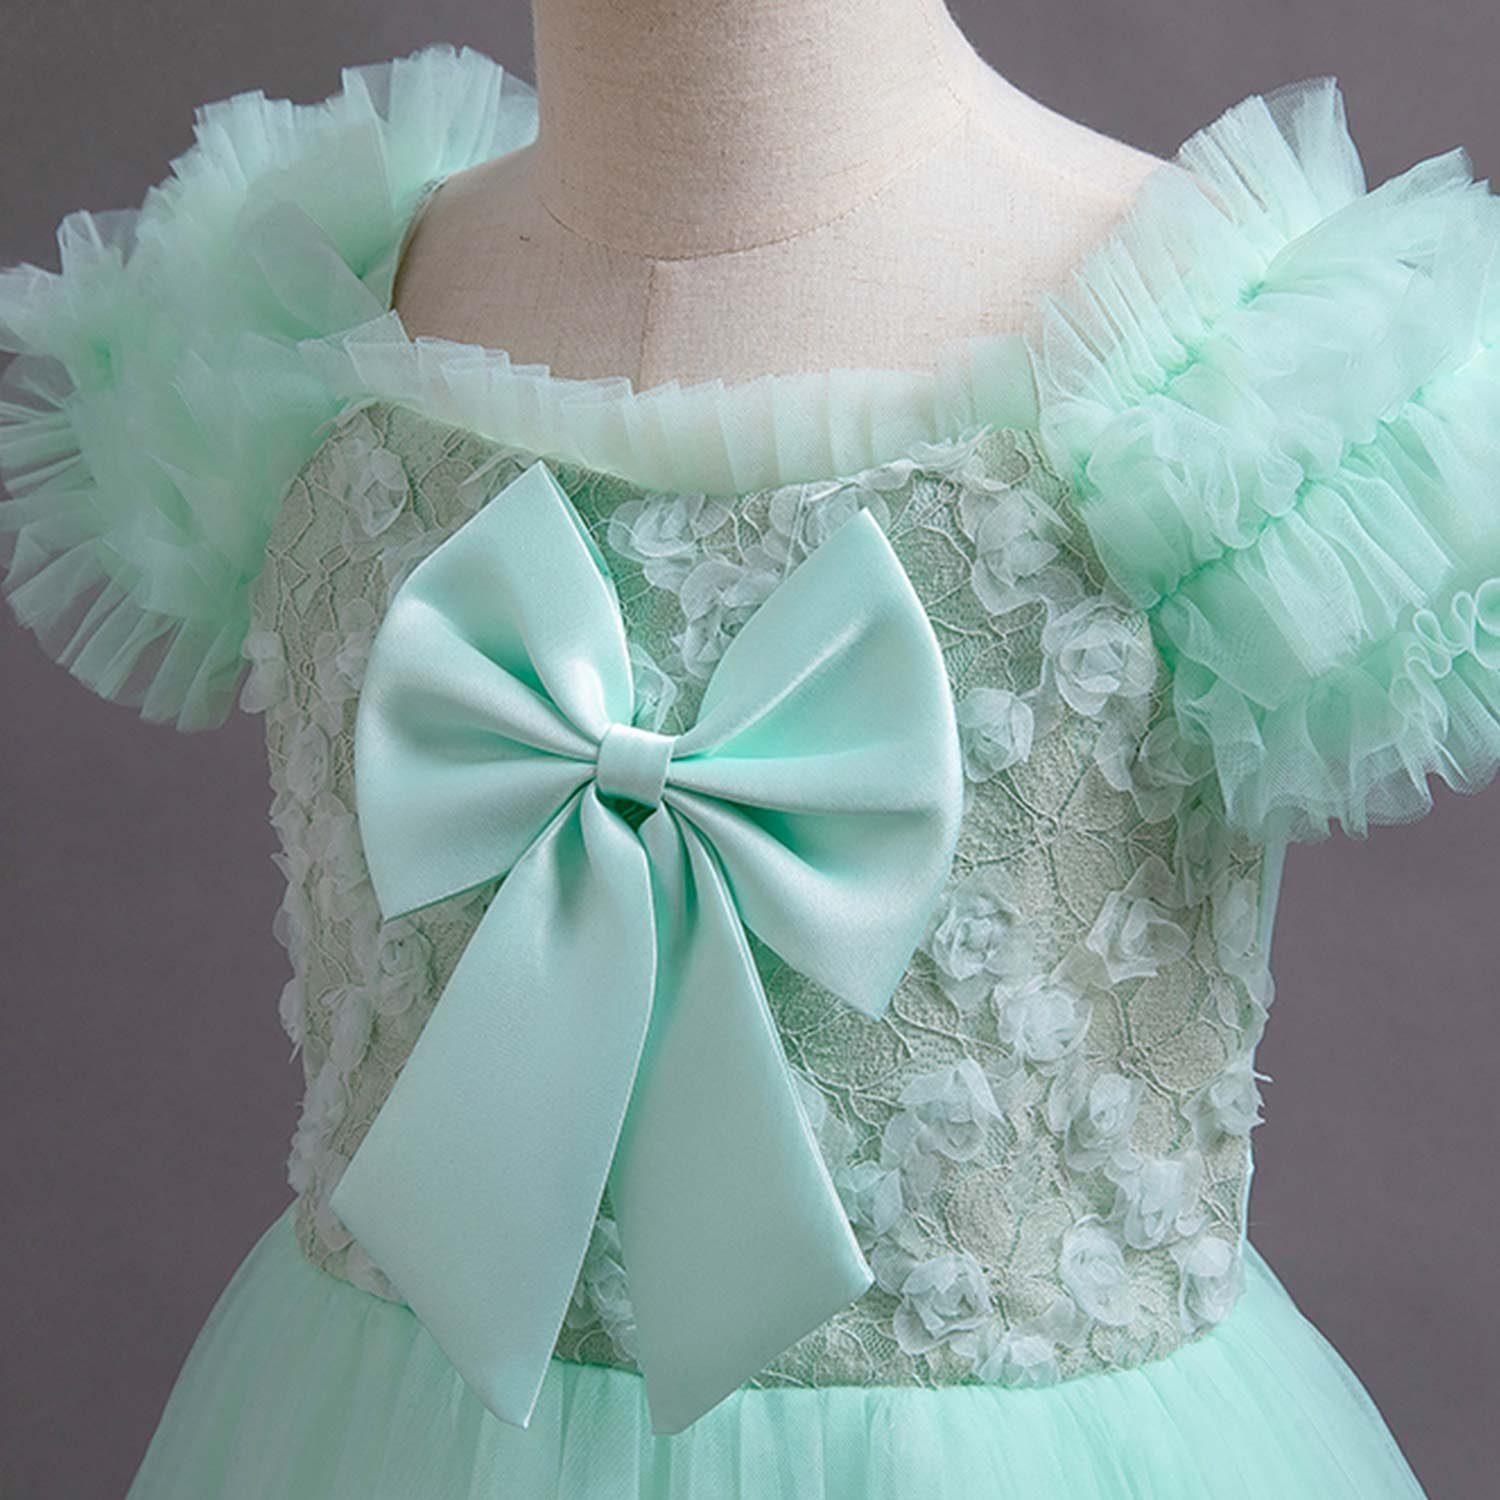 Daisred Tüllkleid Kinderkleider Abendkleider Ballkleid Grün Prinzessinnenkleider